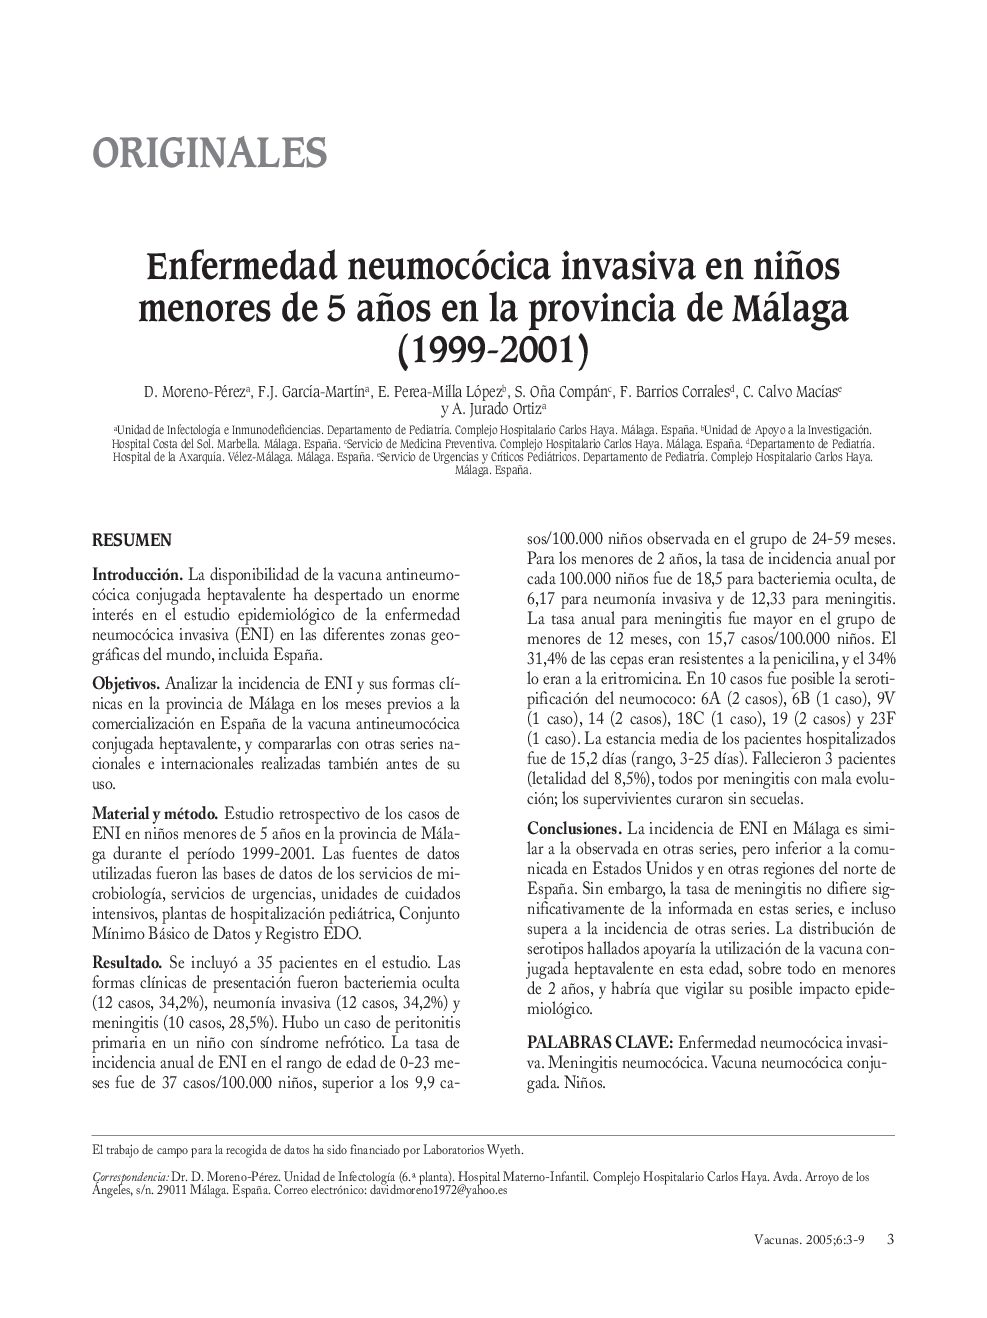 Enfermedad neumocócica invasiva en niños menores de 5 años en la provincia de Málaga (1999-2001)